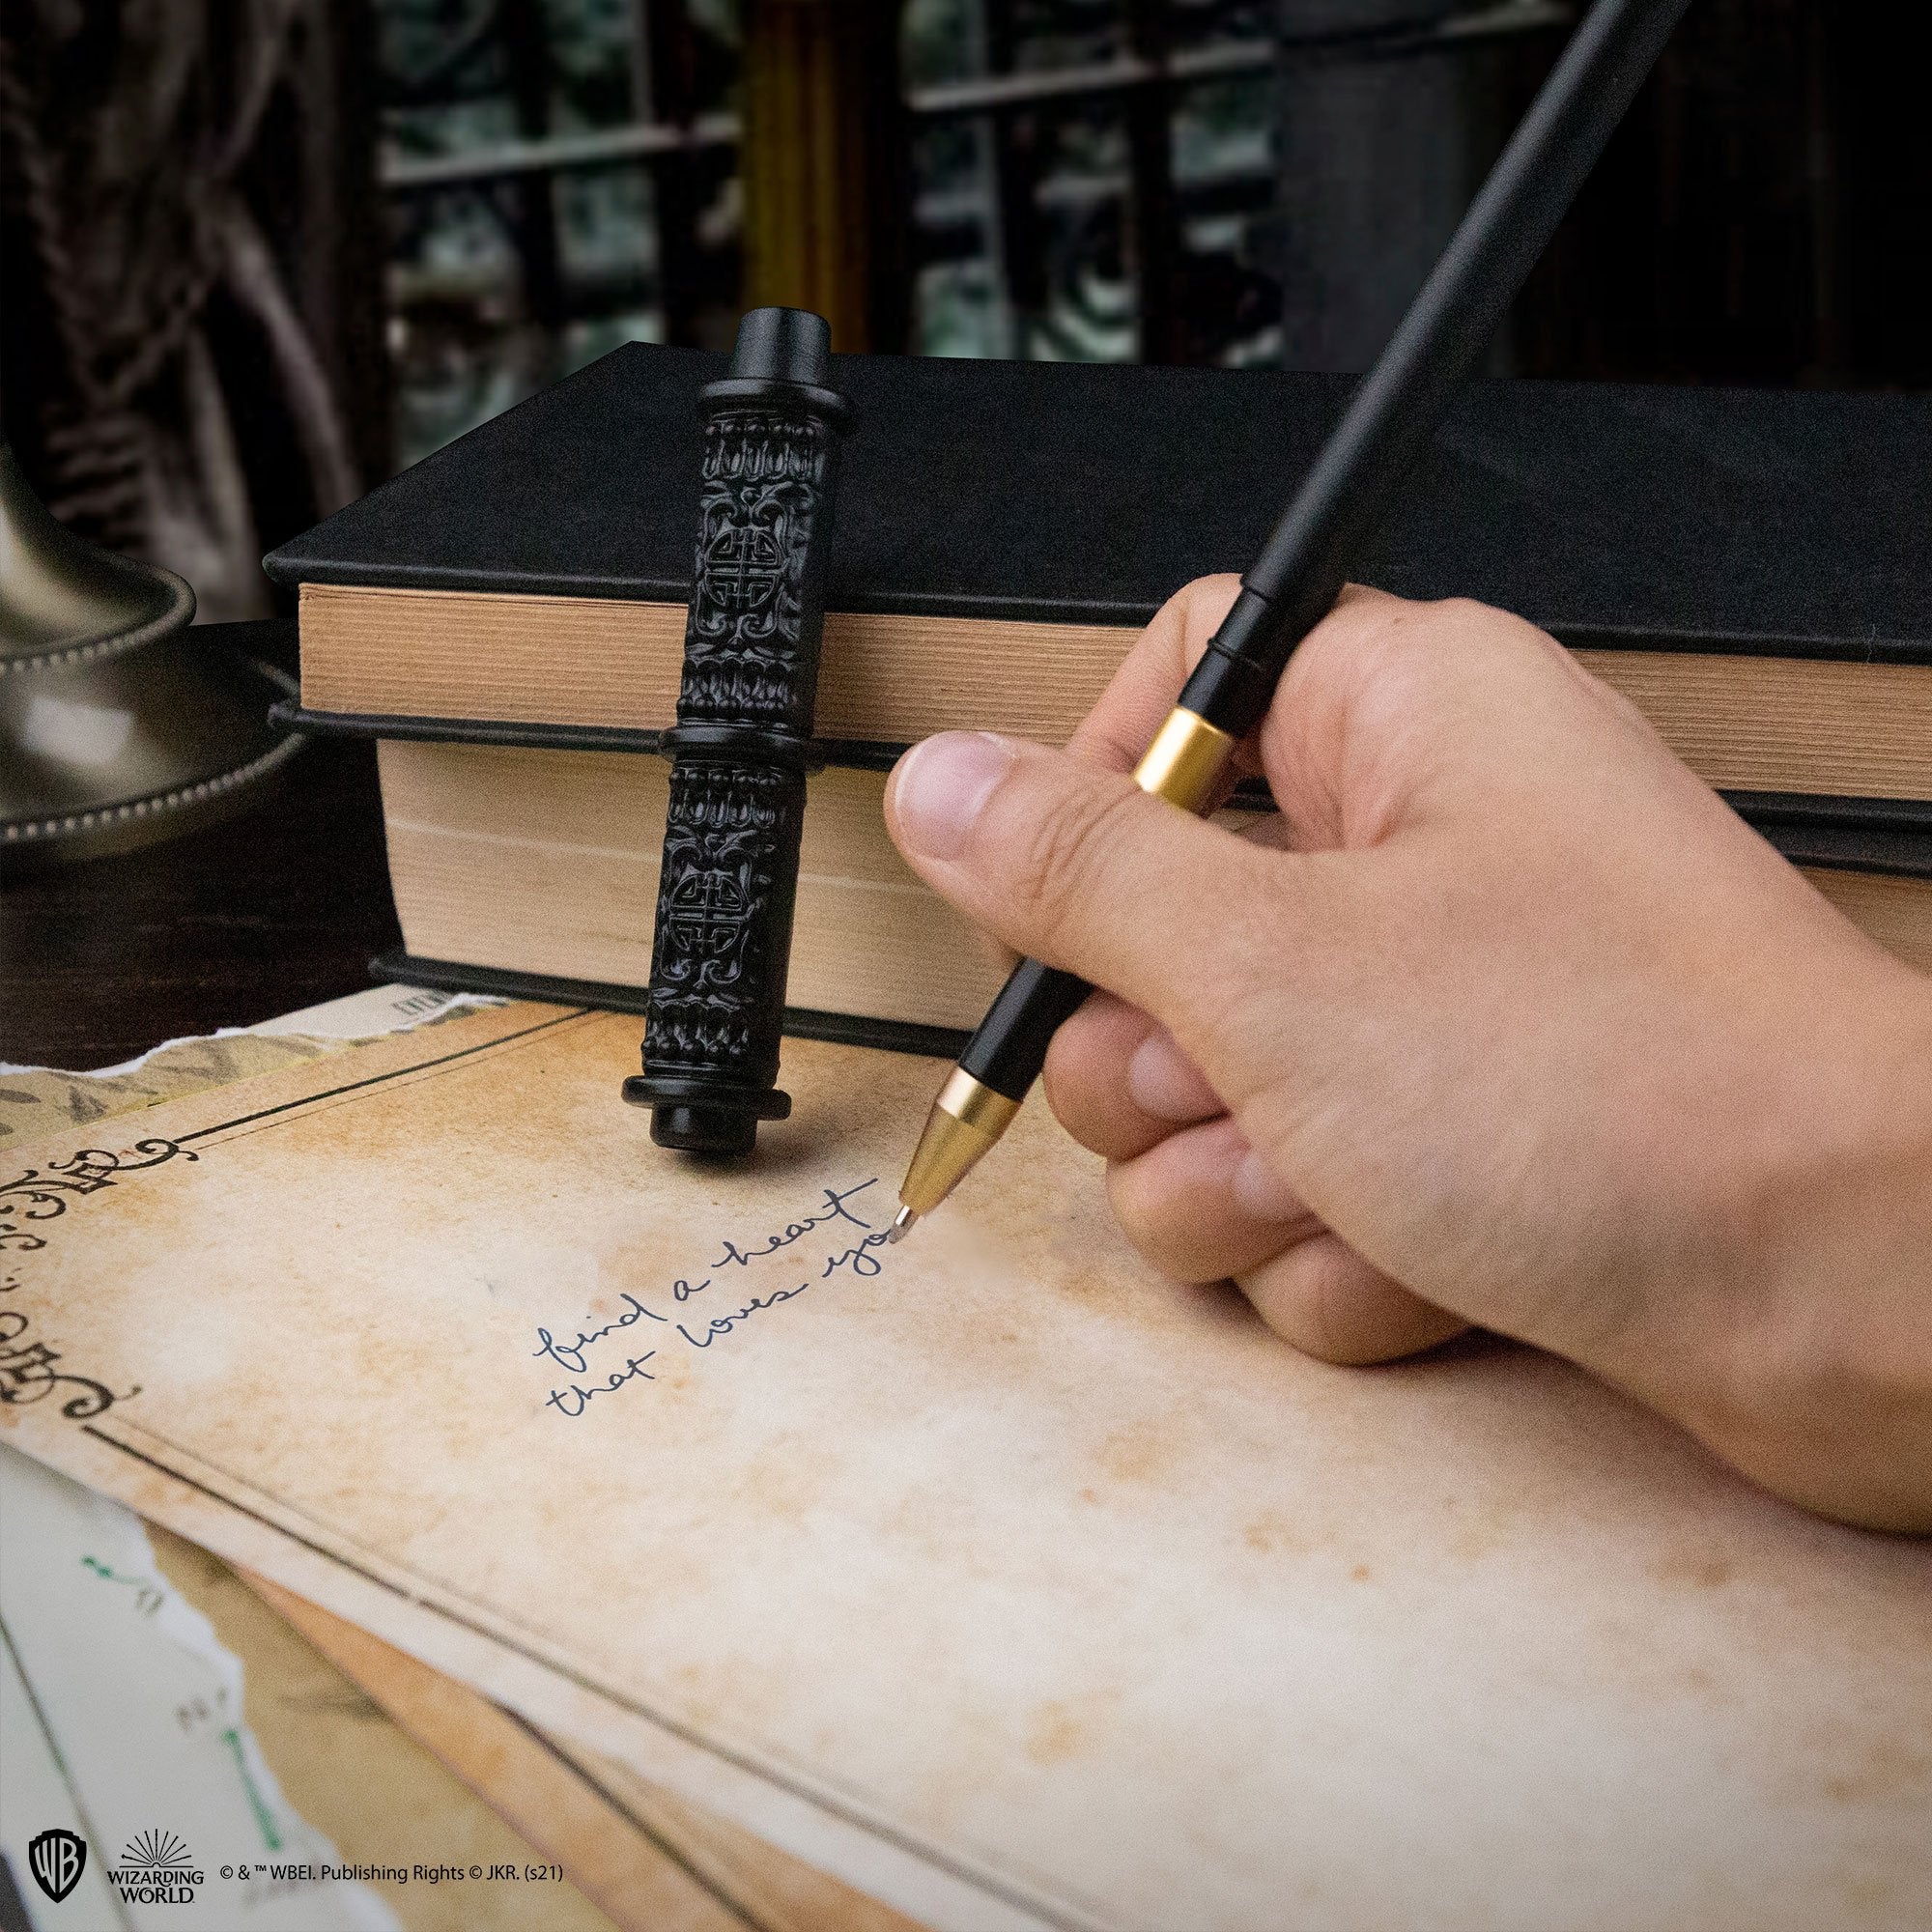 Harry Potter Set Stift Zauberstab und Bleistift Besen